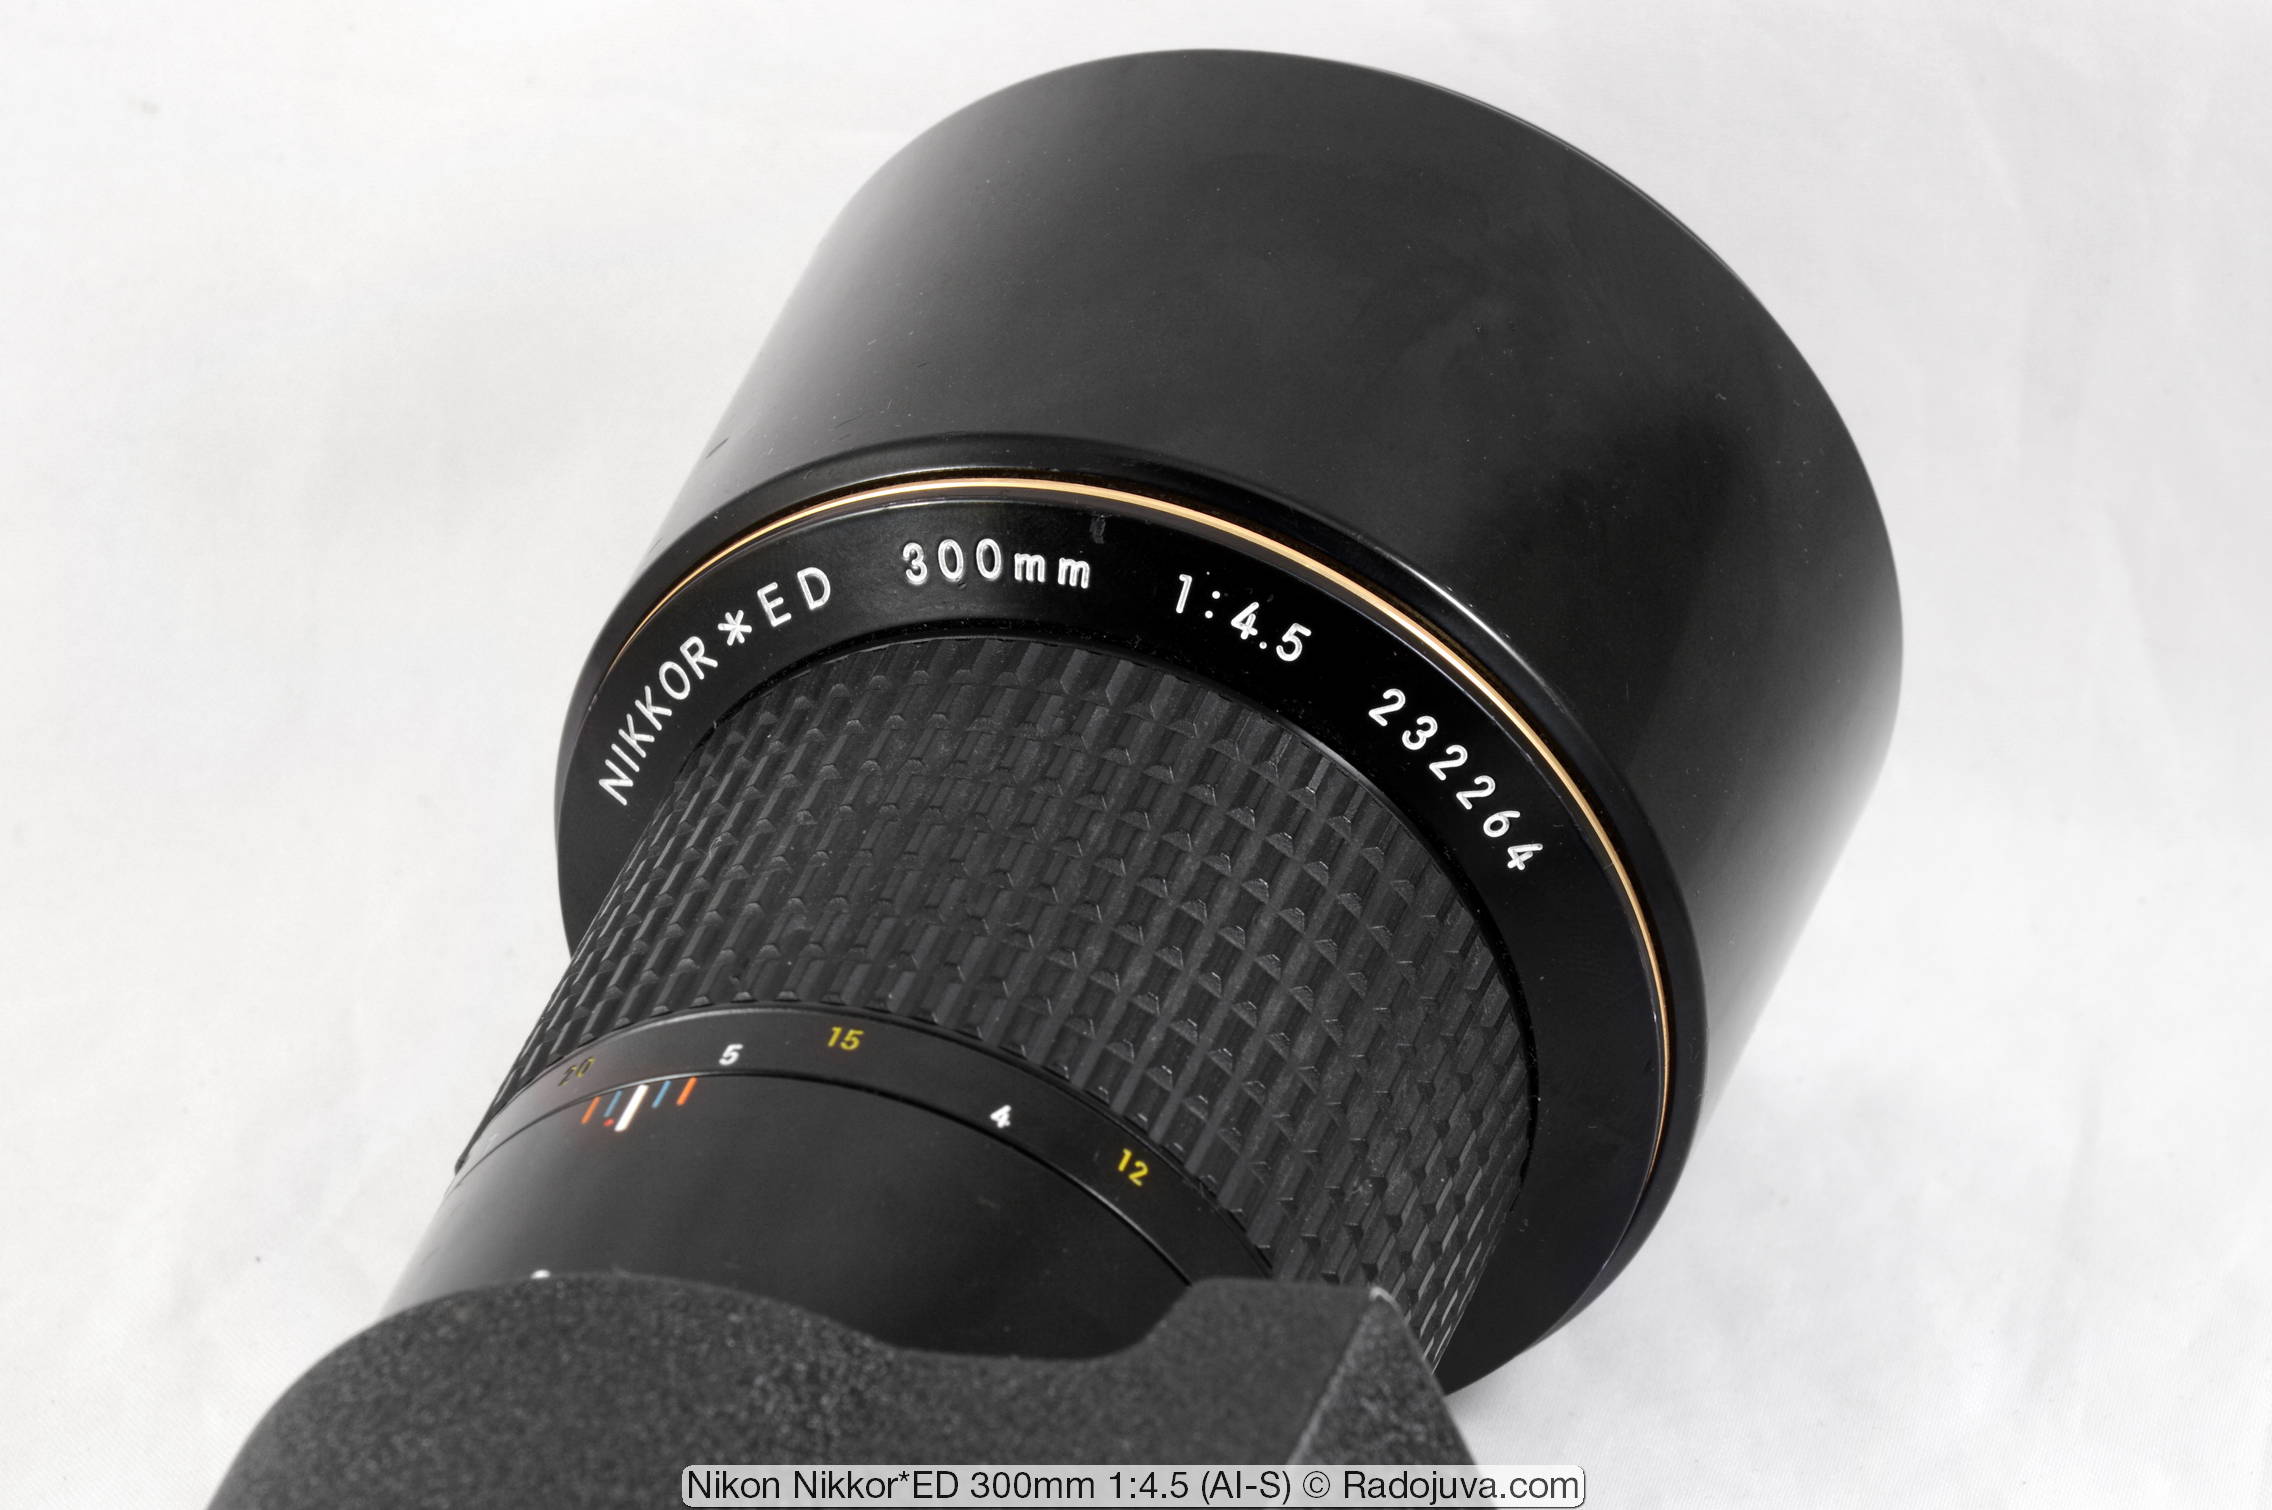 Nikon Nikkor * ED 300mm 1: 4.5 (AI-S